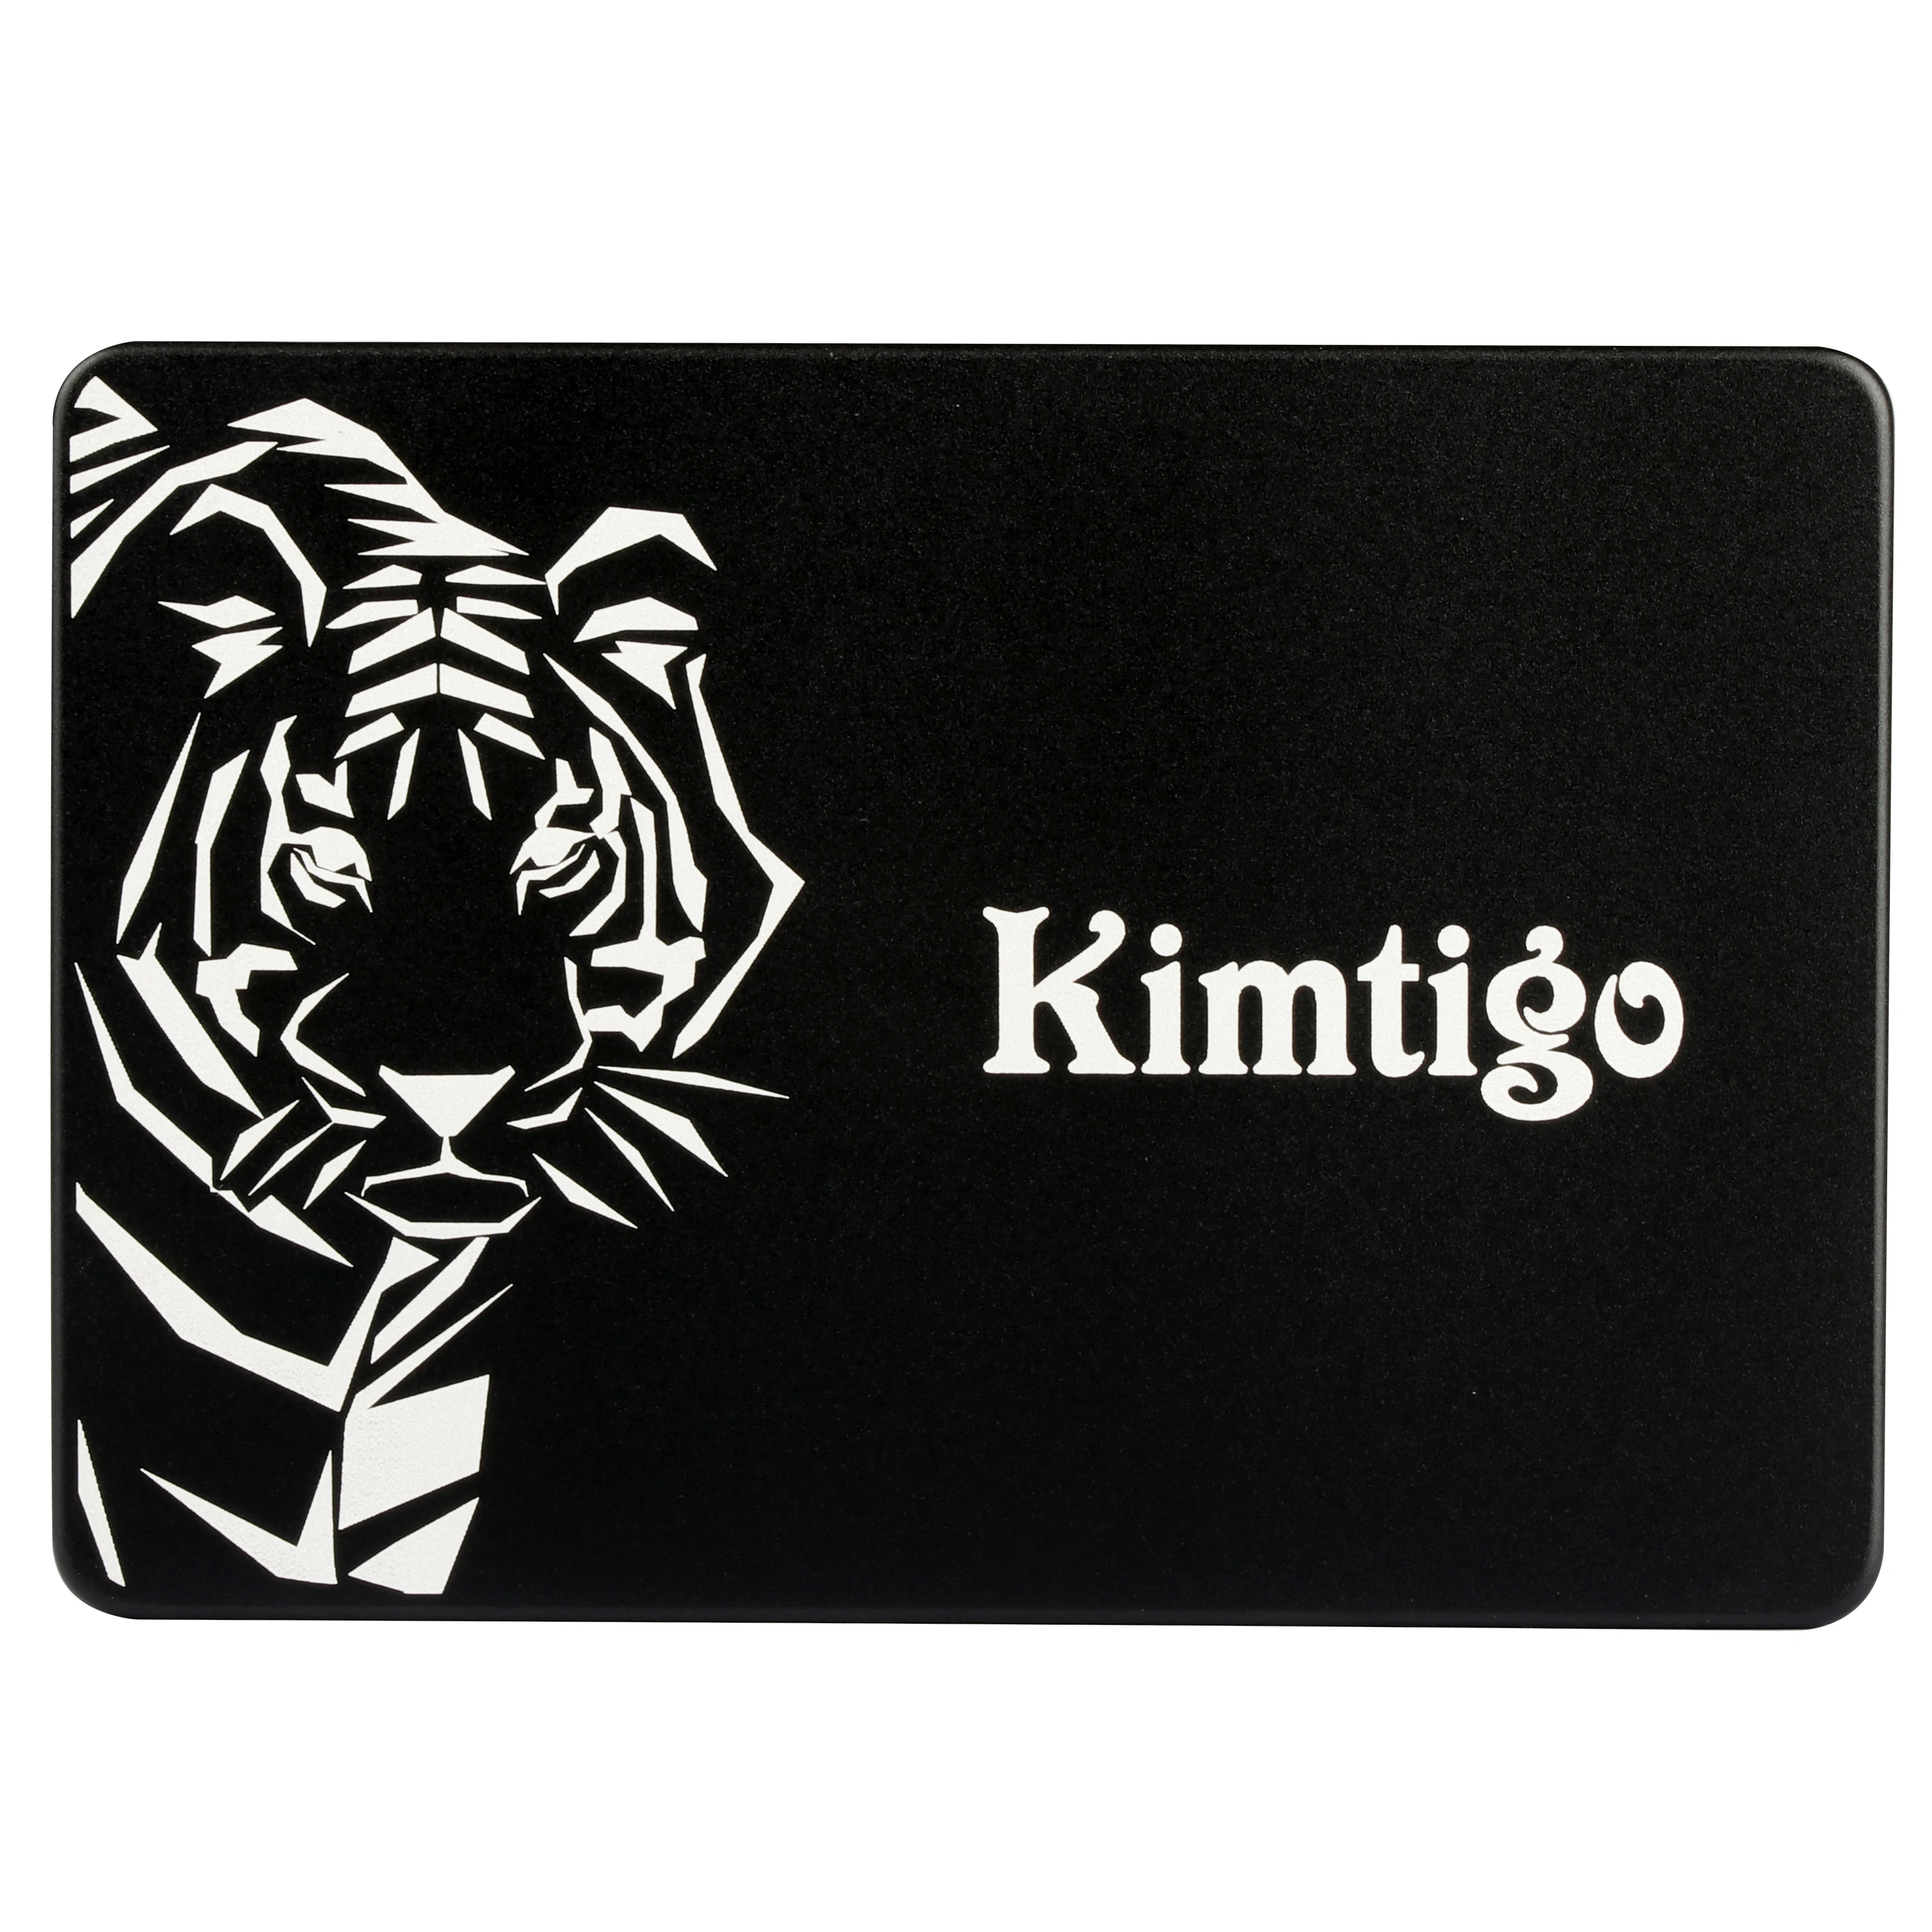 

Kimtigo ssd OEM internal hard drive/KAT-300 series 120GB/240GB/480GB ssd SSD Hard Disk for PC Laptop, Black